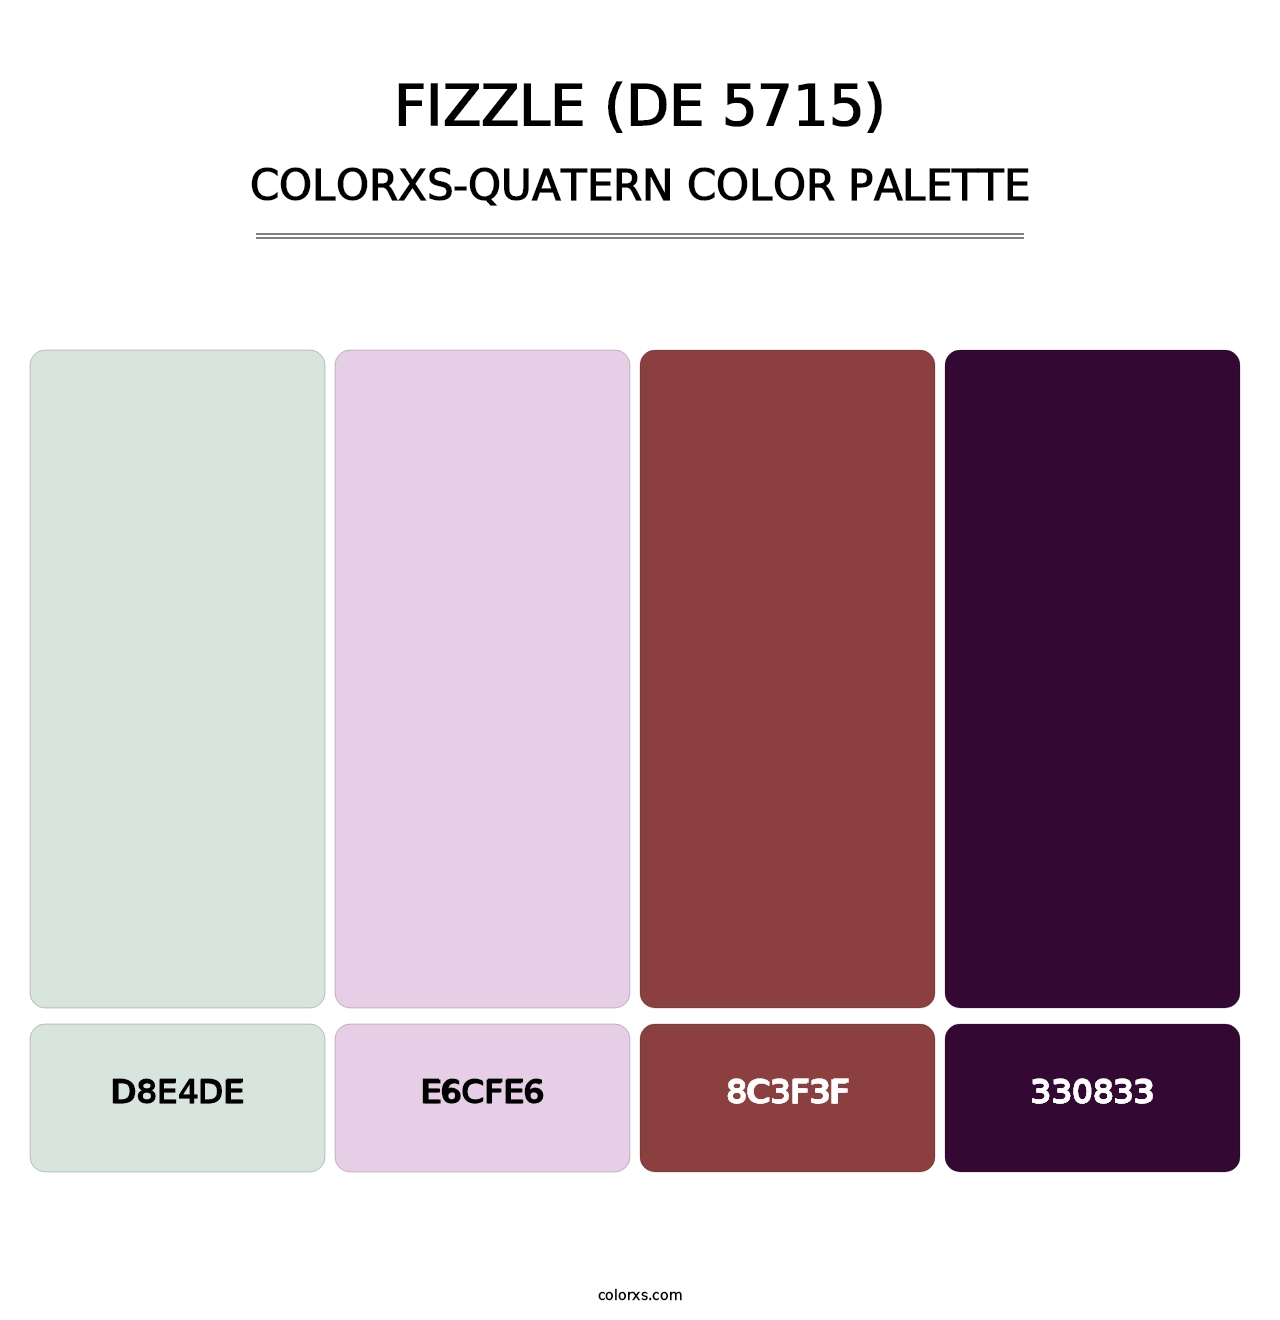 Fizzle (DE 5715) - Colorxs Quatern Palette